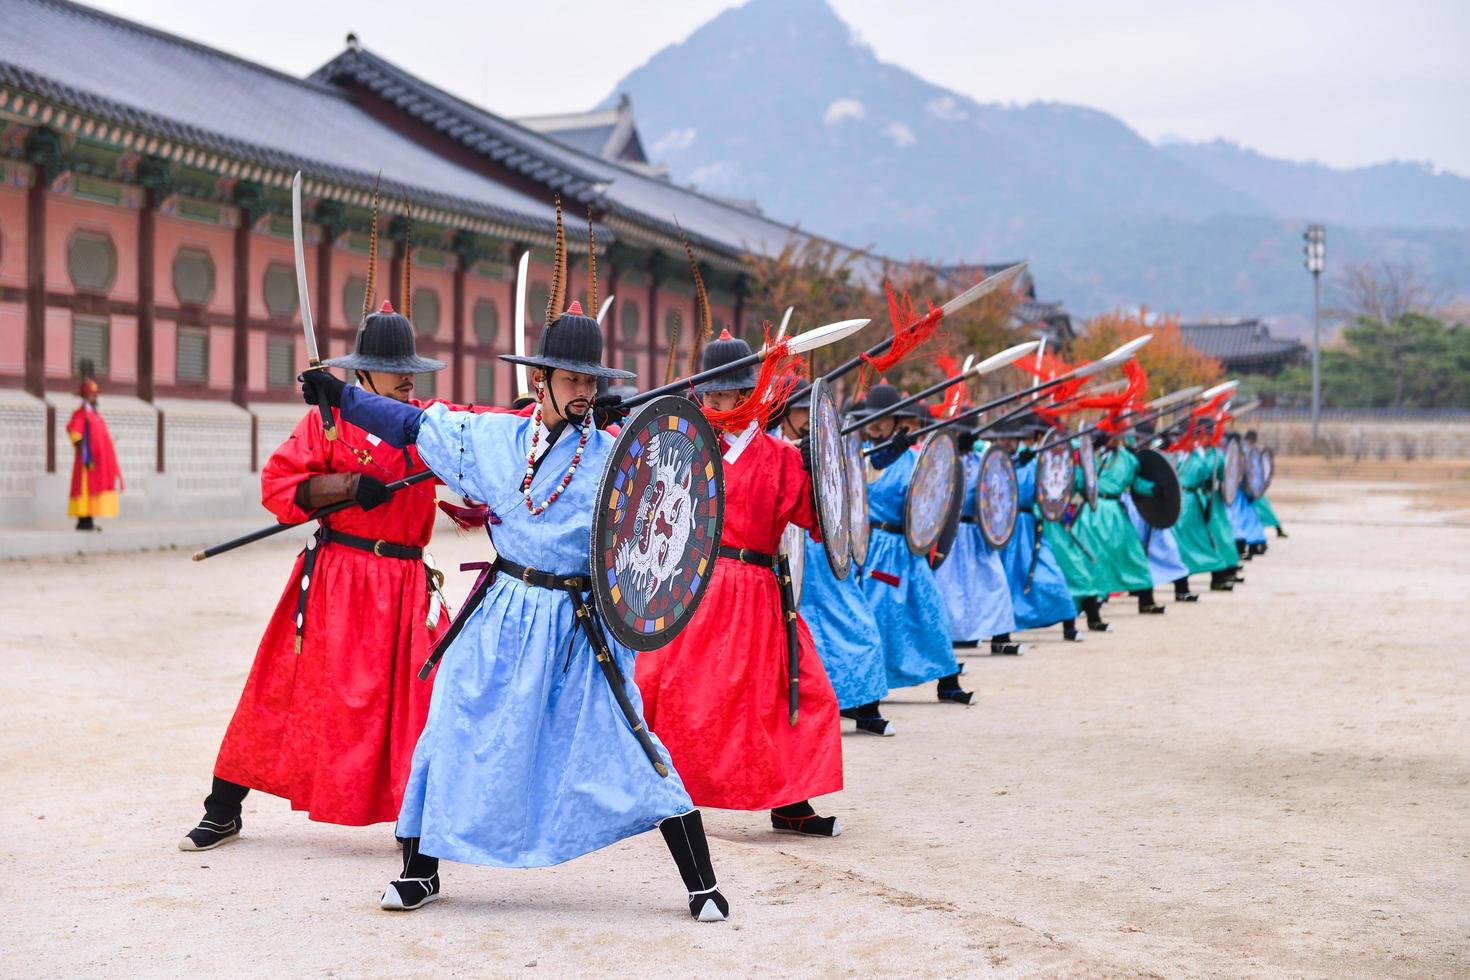 seúl, sur Corea - nov 13, 2017-el real entrenamiento de guardia ceremonia a gyeongbokgung palacio en seúl, Corea foto